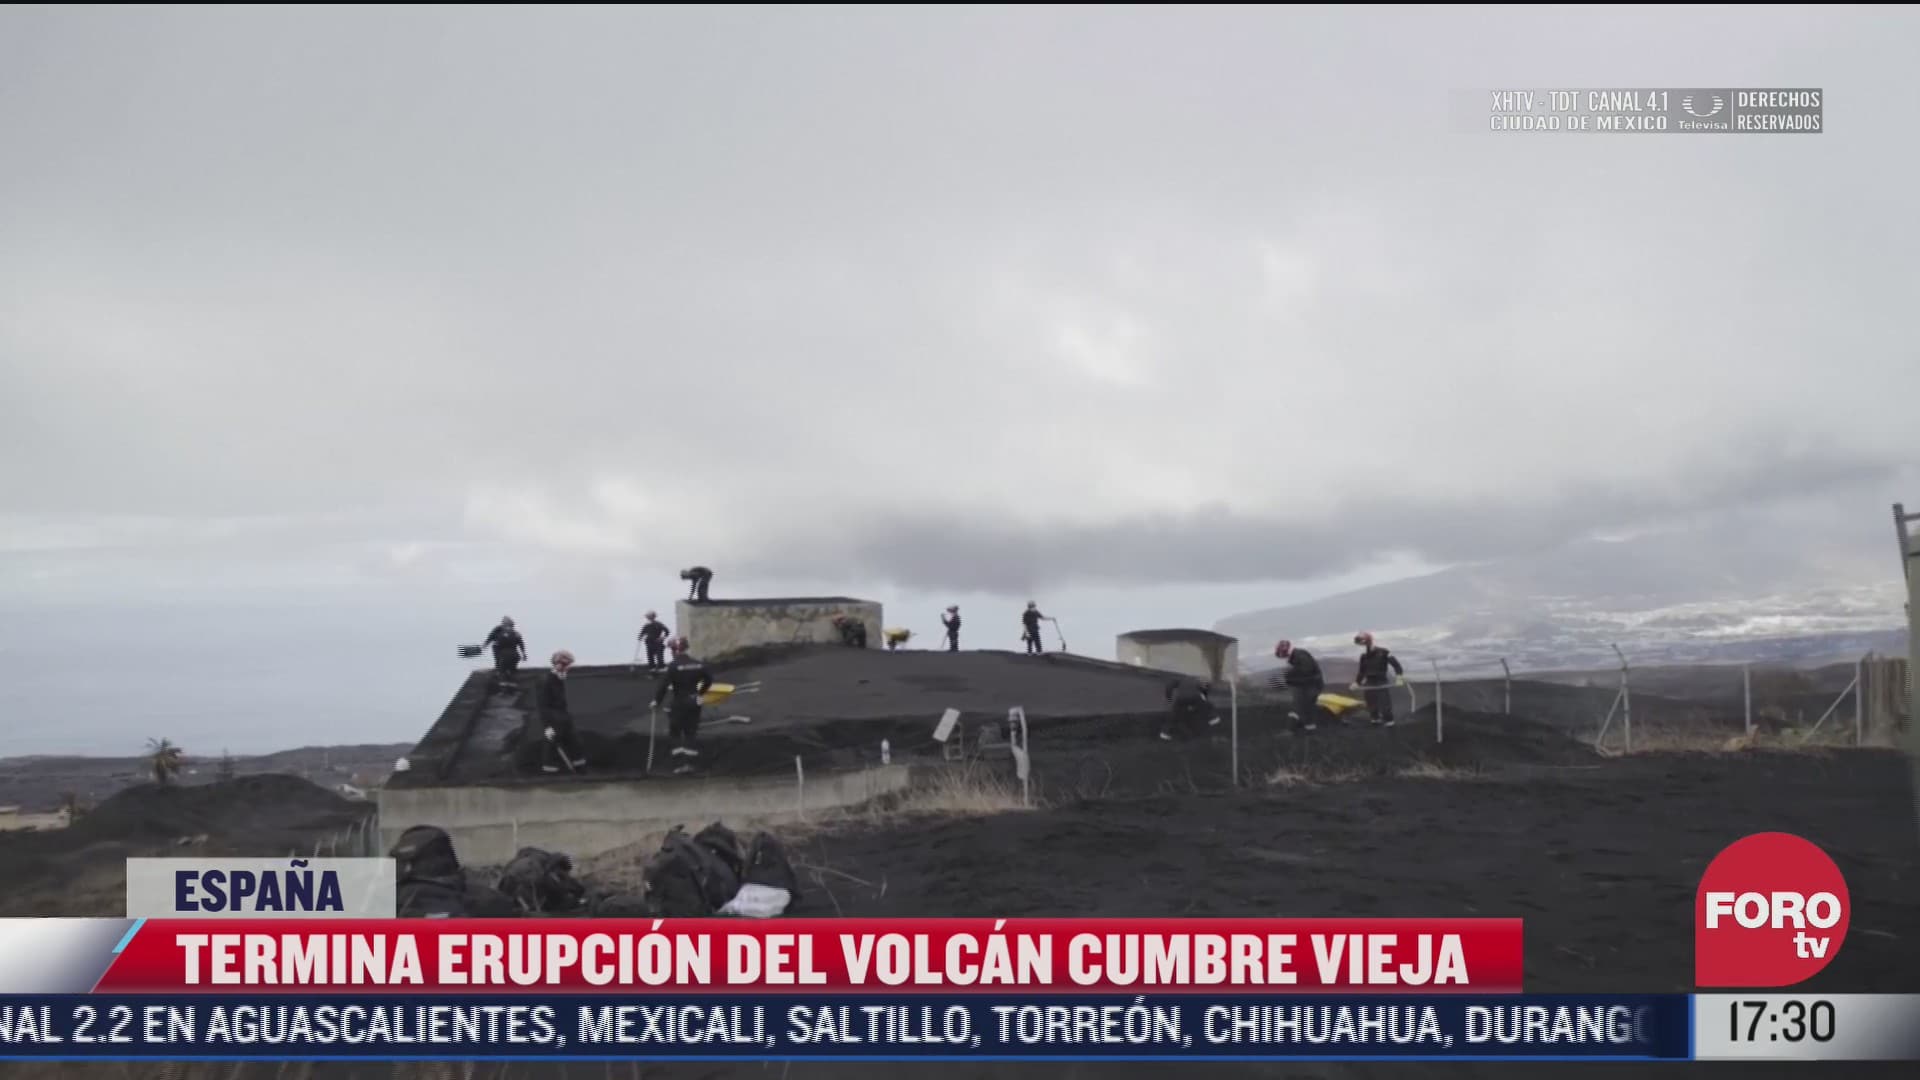 finaliza erupcion del volcan cumbre vieja en espana